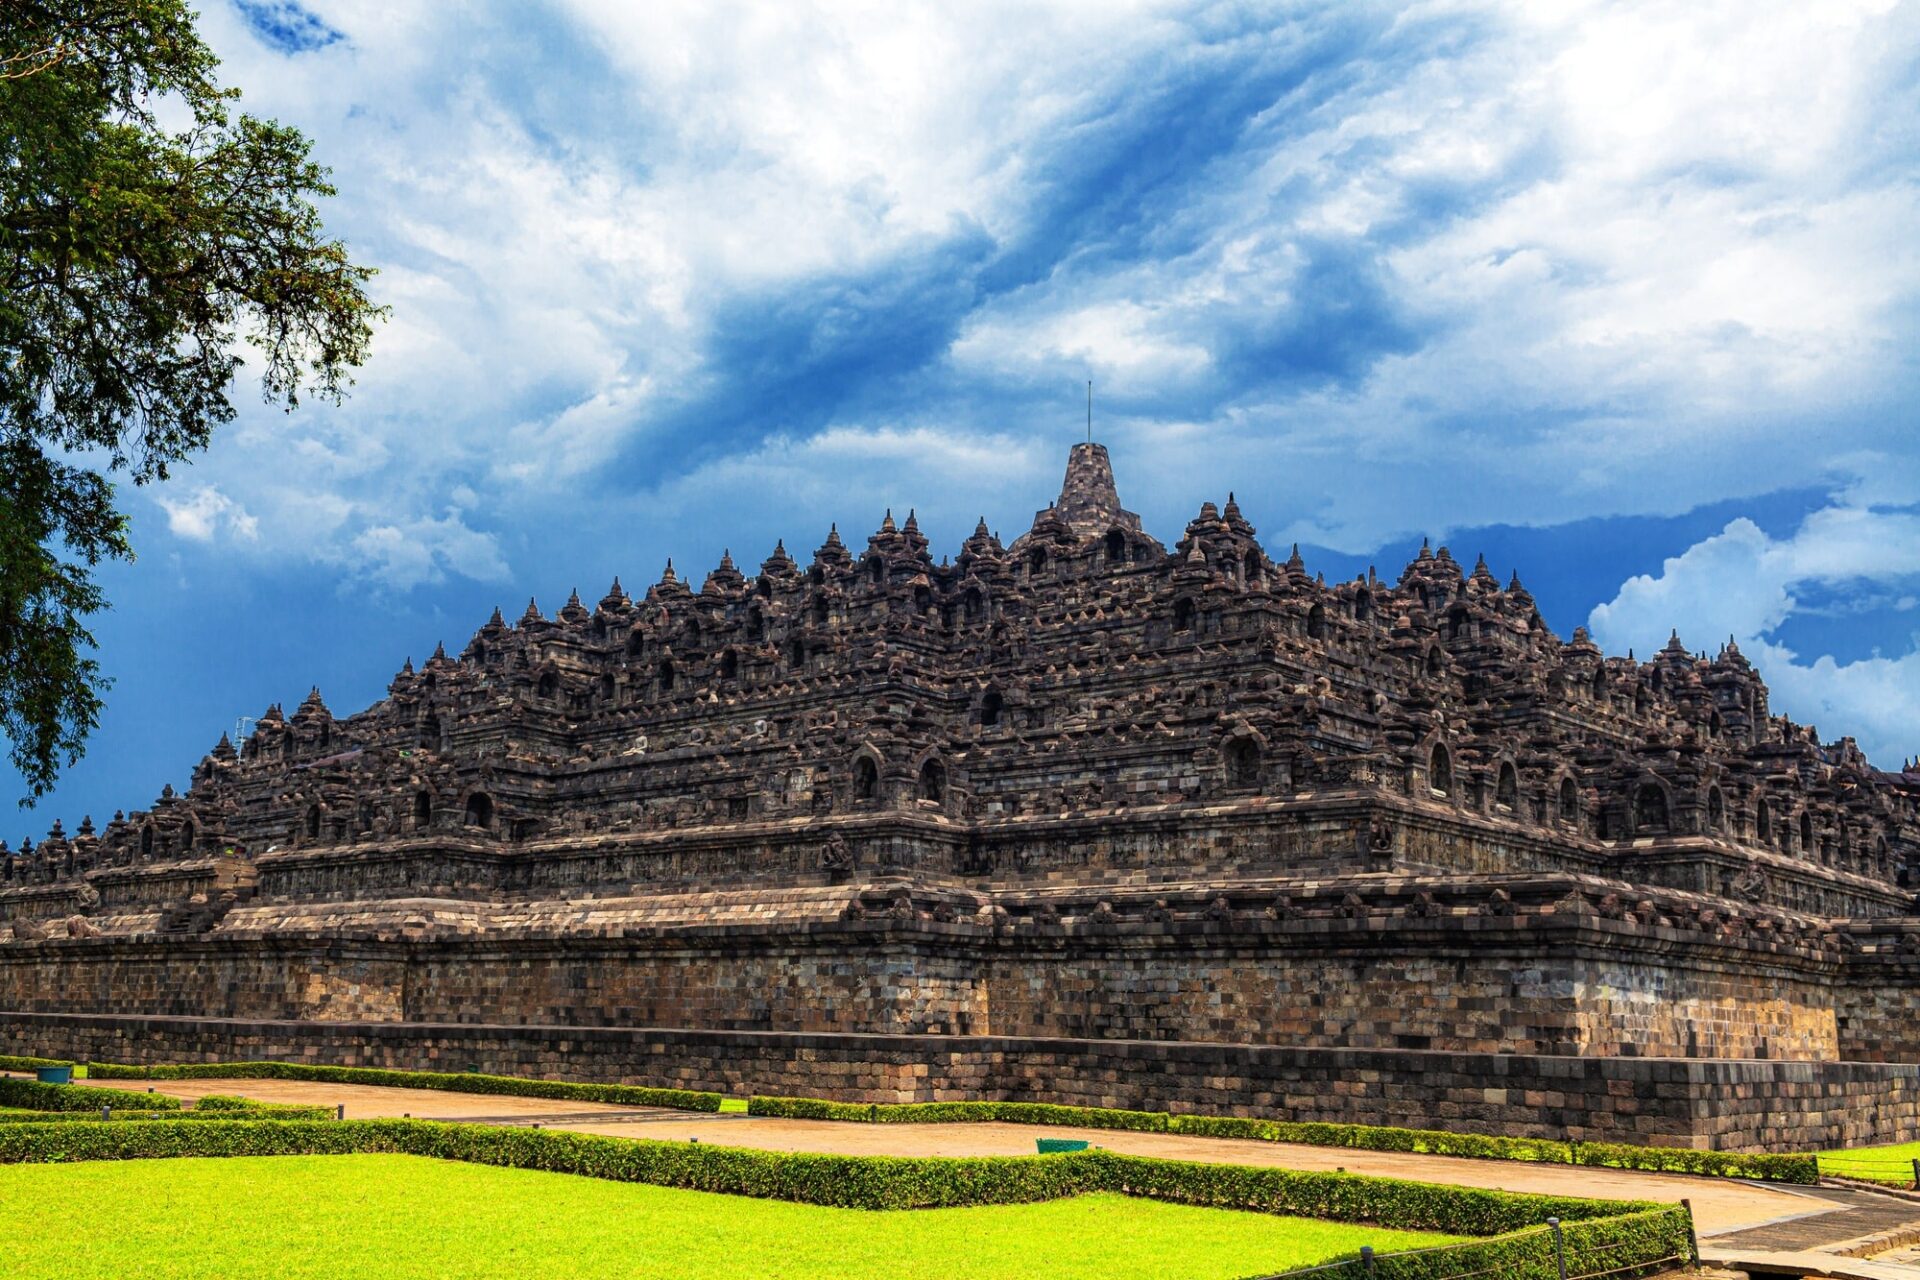 インドネシア・ボロブドゥール寺院遺跡群の風景